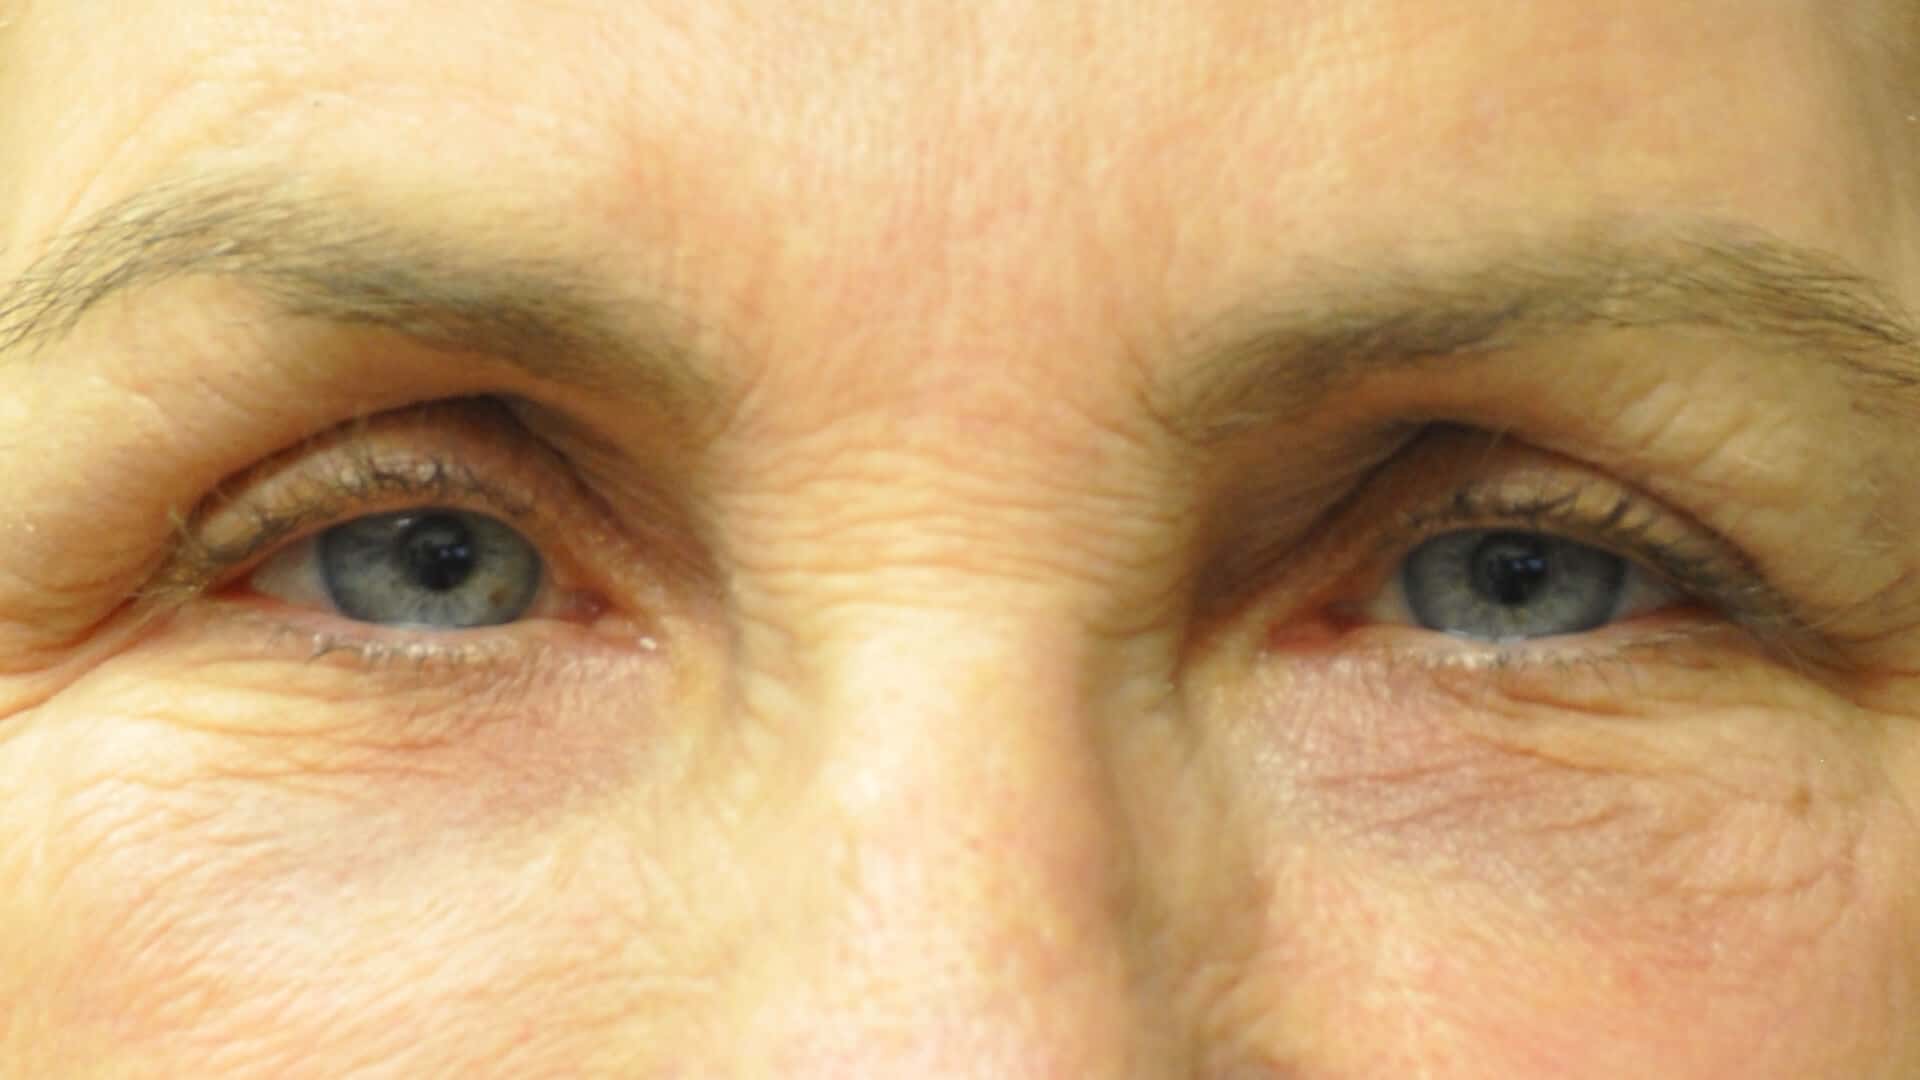 Upper Blepharoplasty Before & After Photos,Upper Eyelid Lift Surgery before & after,Upper Blepharoplasty Before and After Gallery,Upper Eyelid Blepharoplasty Photos,Upper Blepharoplasty before & after, Blepharoplasty (Eyelid Lift) &#8211; Upper